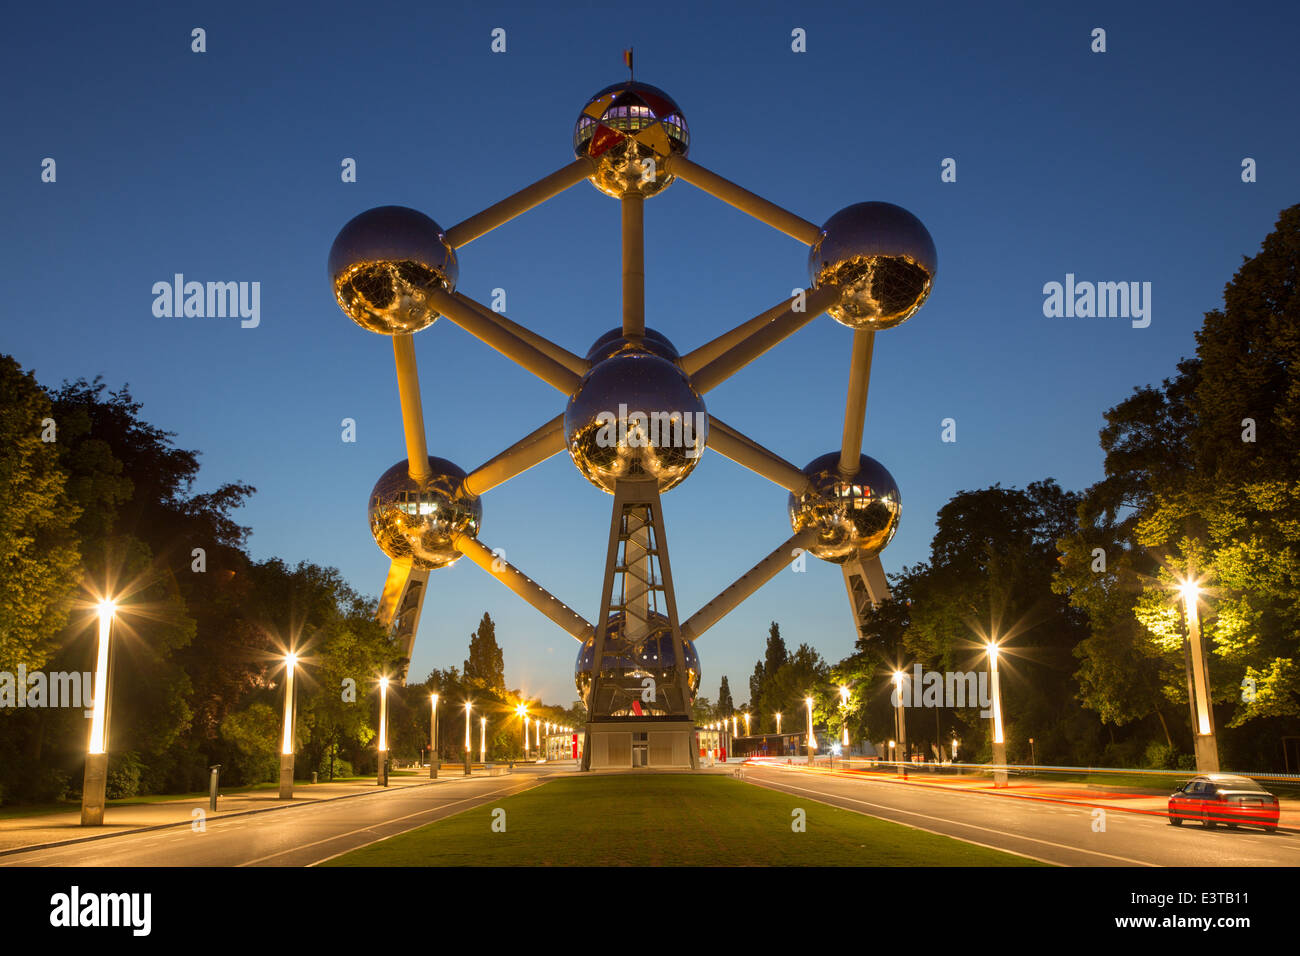 Brüssel, Belgien - 16. Juni 2014: Atomium in der Abenddämmerung. Moderne Gebäude wurde ursprünglich für die Expo 58 gebaut. Stockfoto